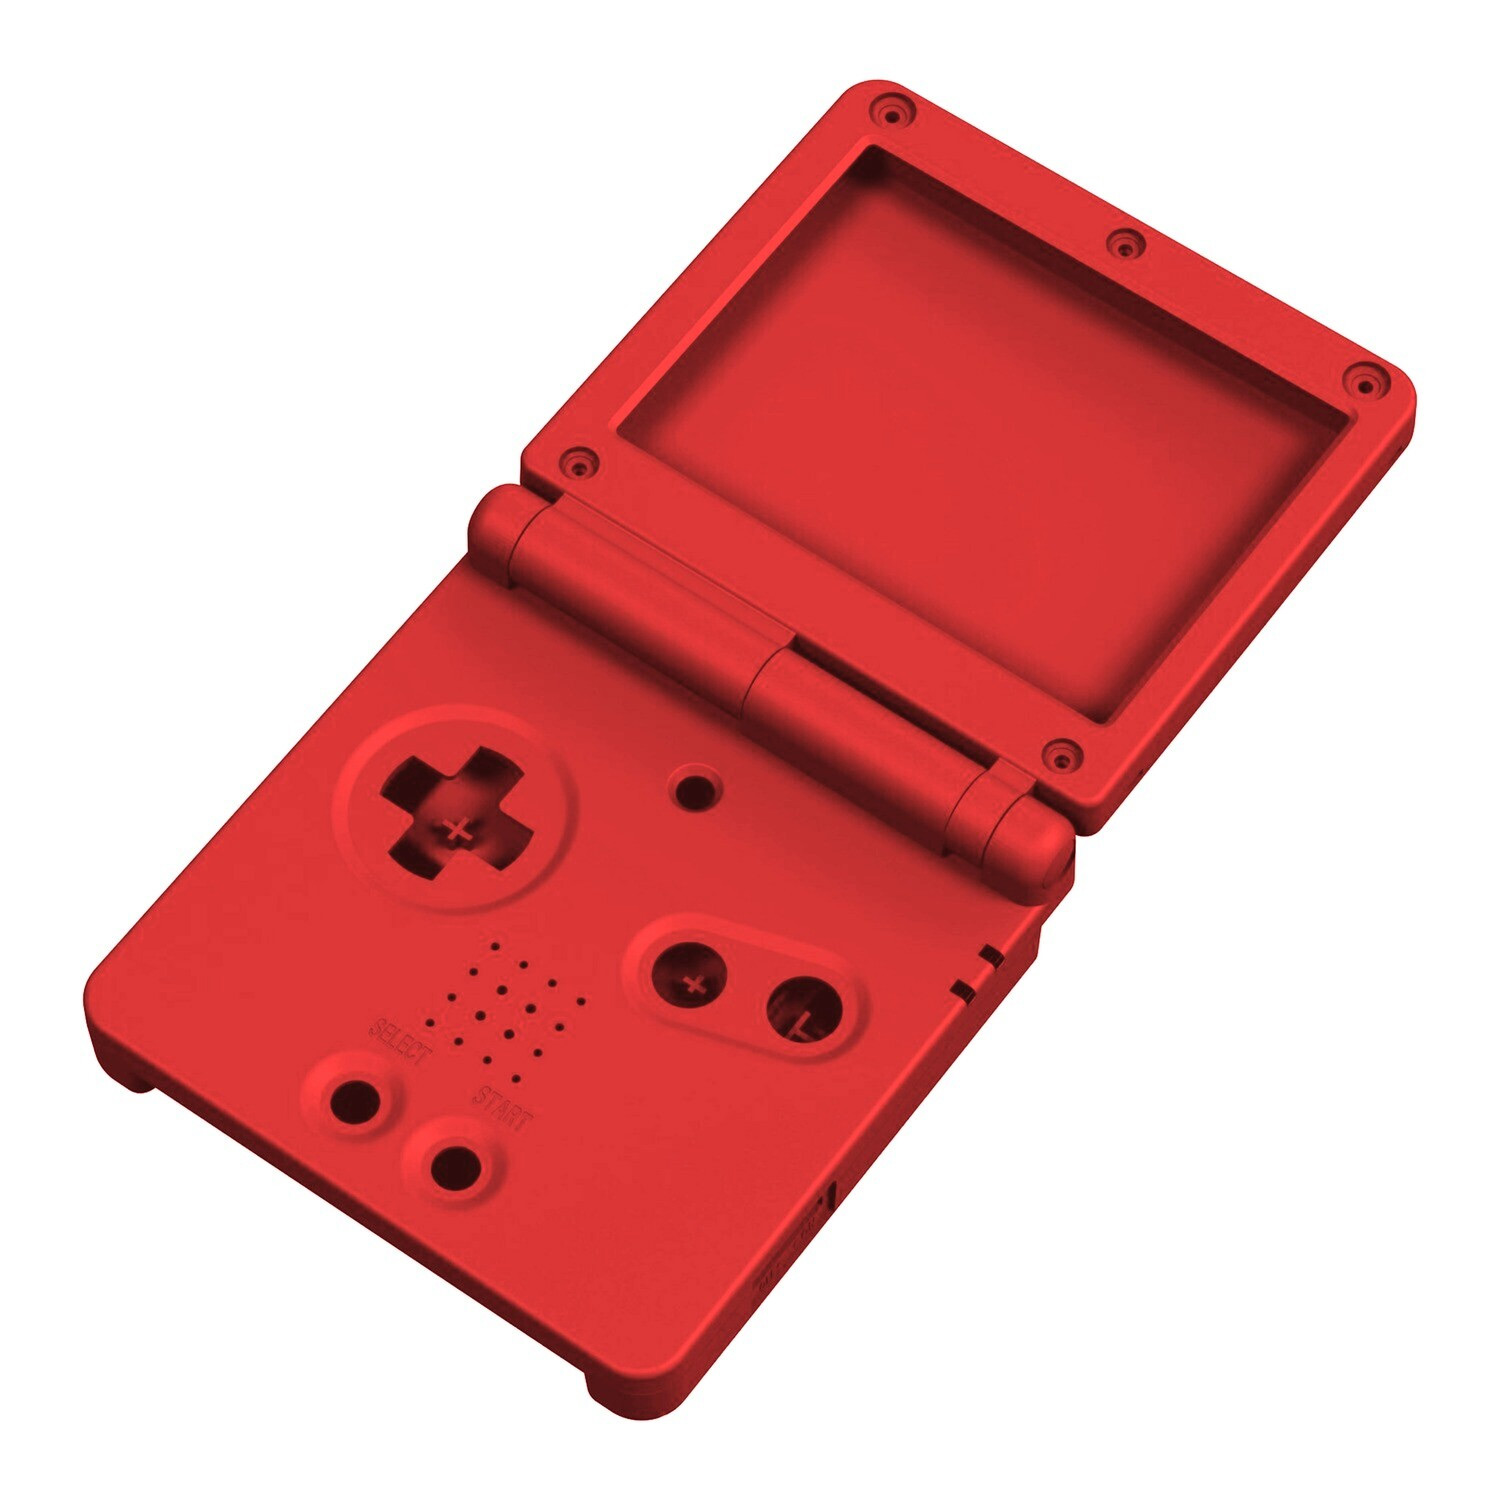 Game Boy Advance SP Gehäuse (Solid Red)